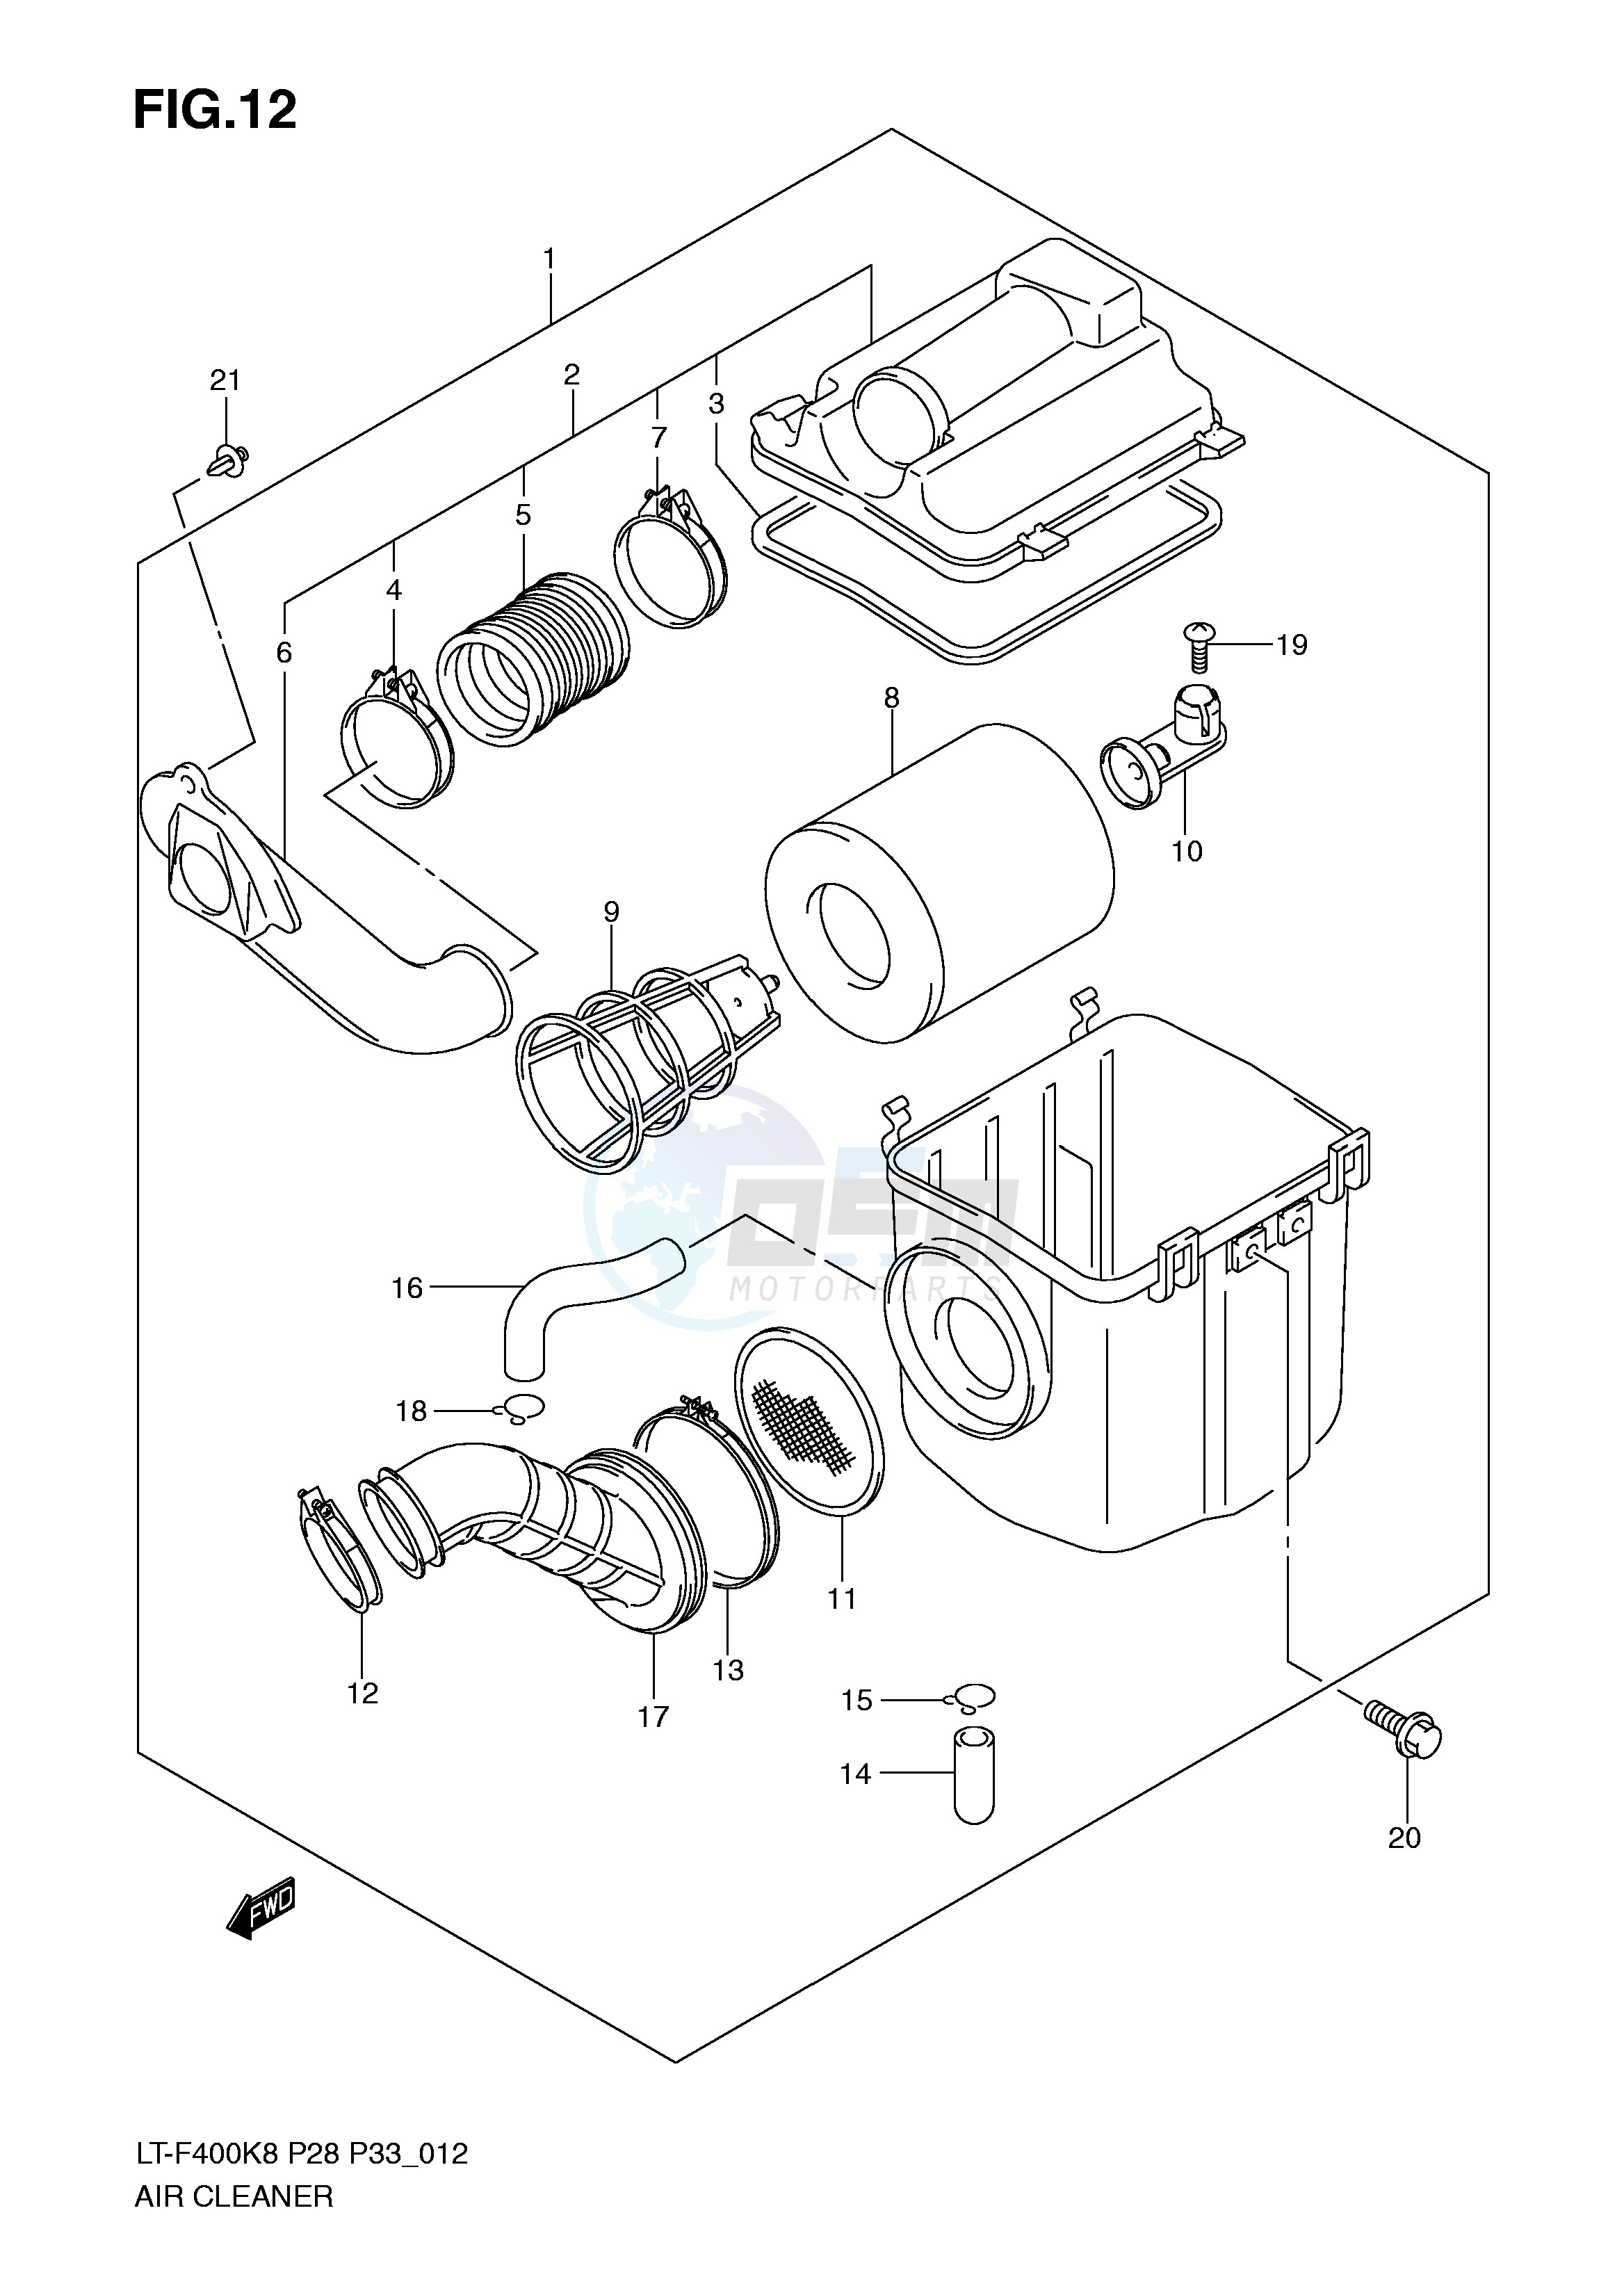 AIR CLEANER (MODEL K8 K9) blueprint